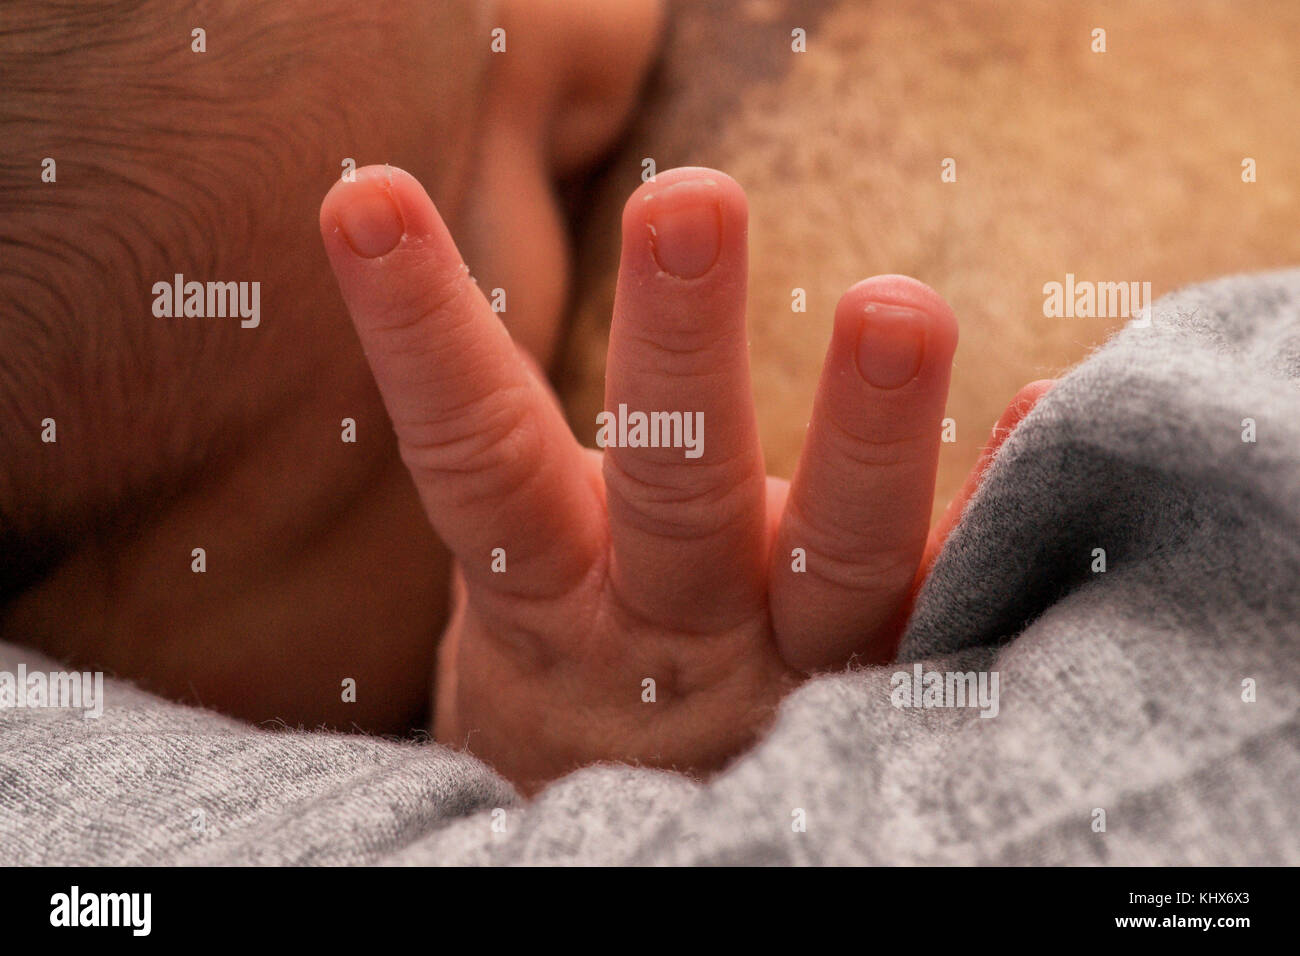 Bebé recién nacido mostrando tres dedos, quizás por tres leche? Foto de stock